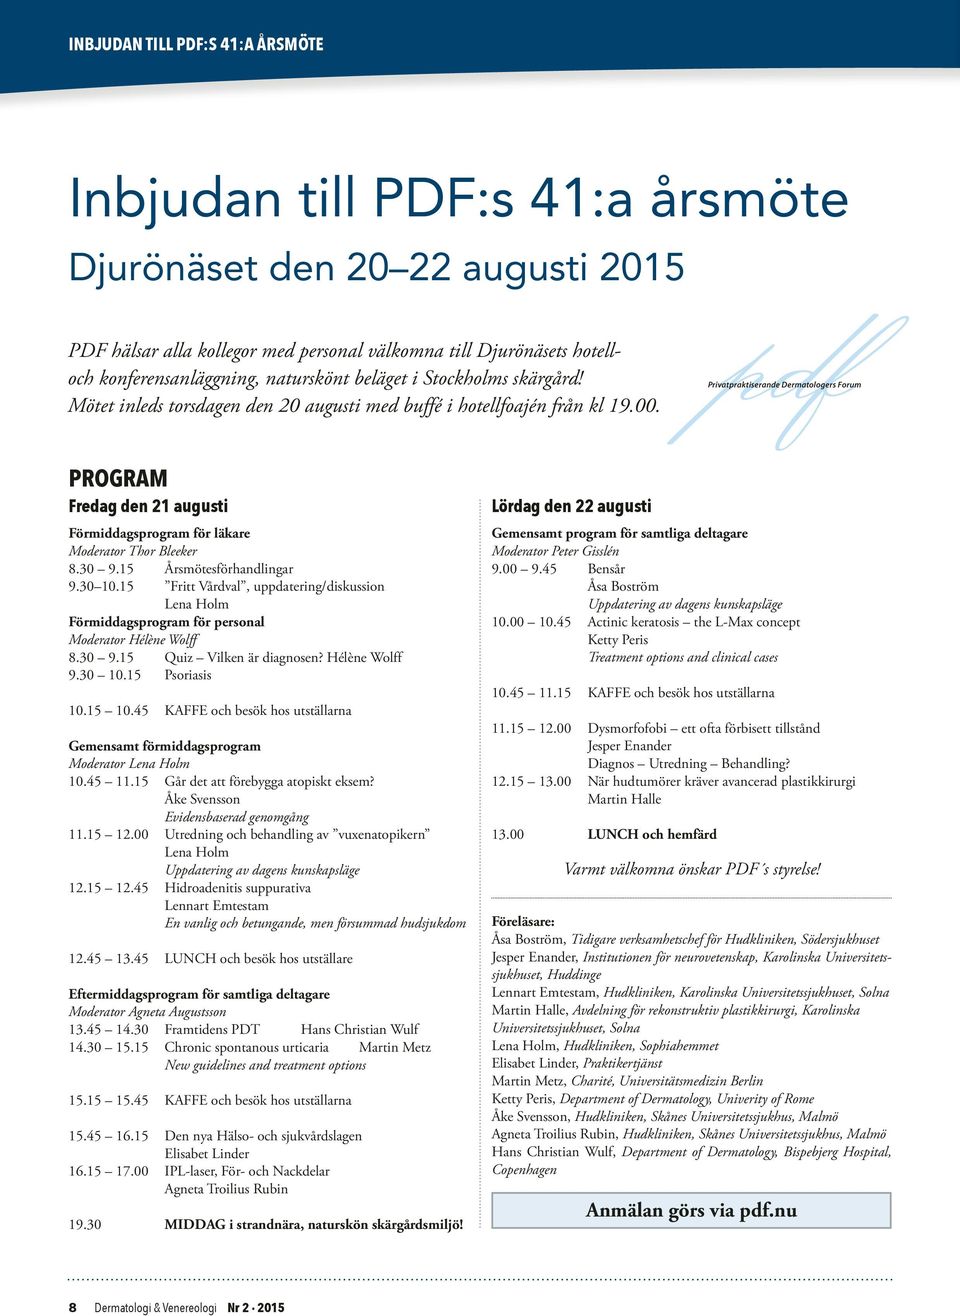 Privatpraktiserande Dermatologers Forum PROGRAM Fredag den 21 augusti Förmiddagsprogram för läkare Moderator Thor Bleeker 8.30 9.15 Årsmötesförhandlingar 9.30 10.